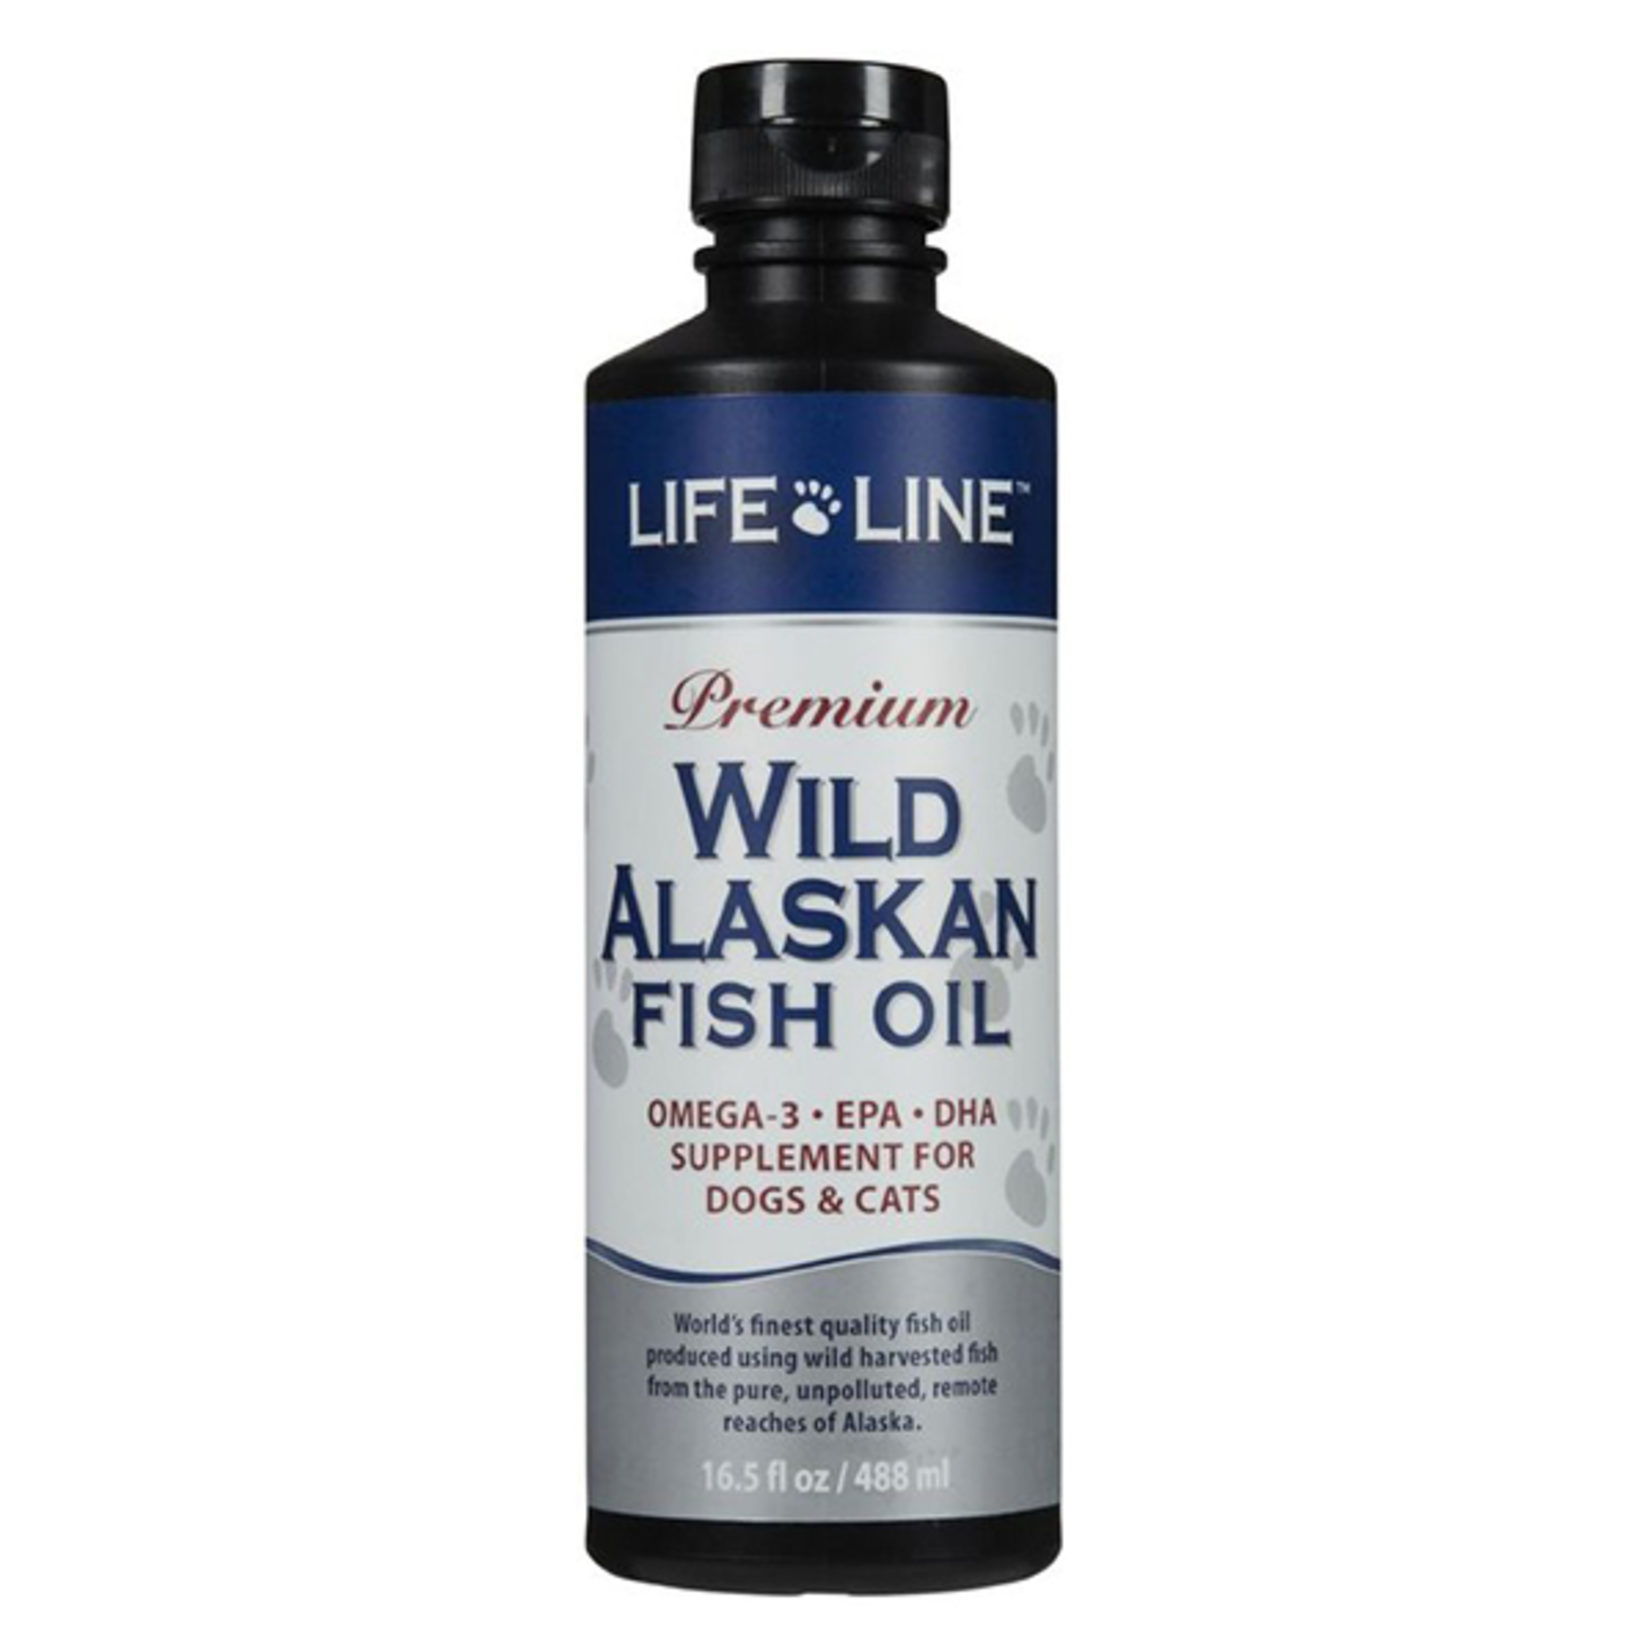 Life Line Lifeline Wild Alaskan Fish Oil 16.5 oz